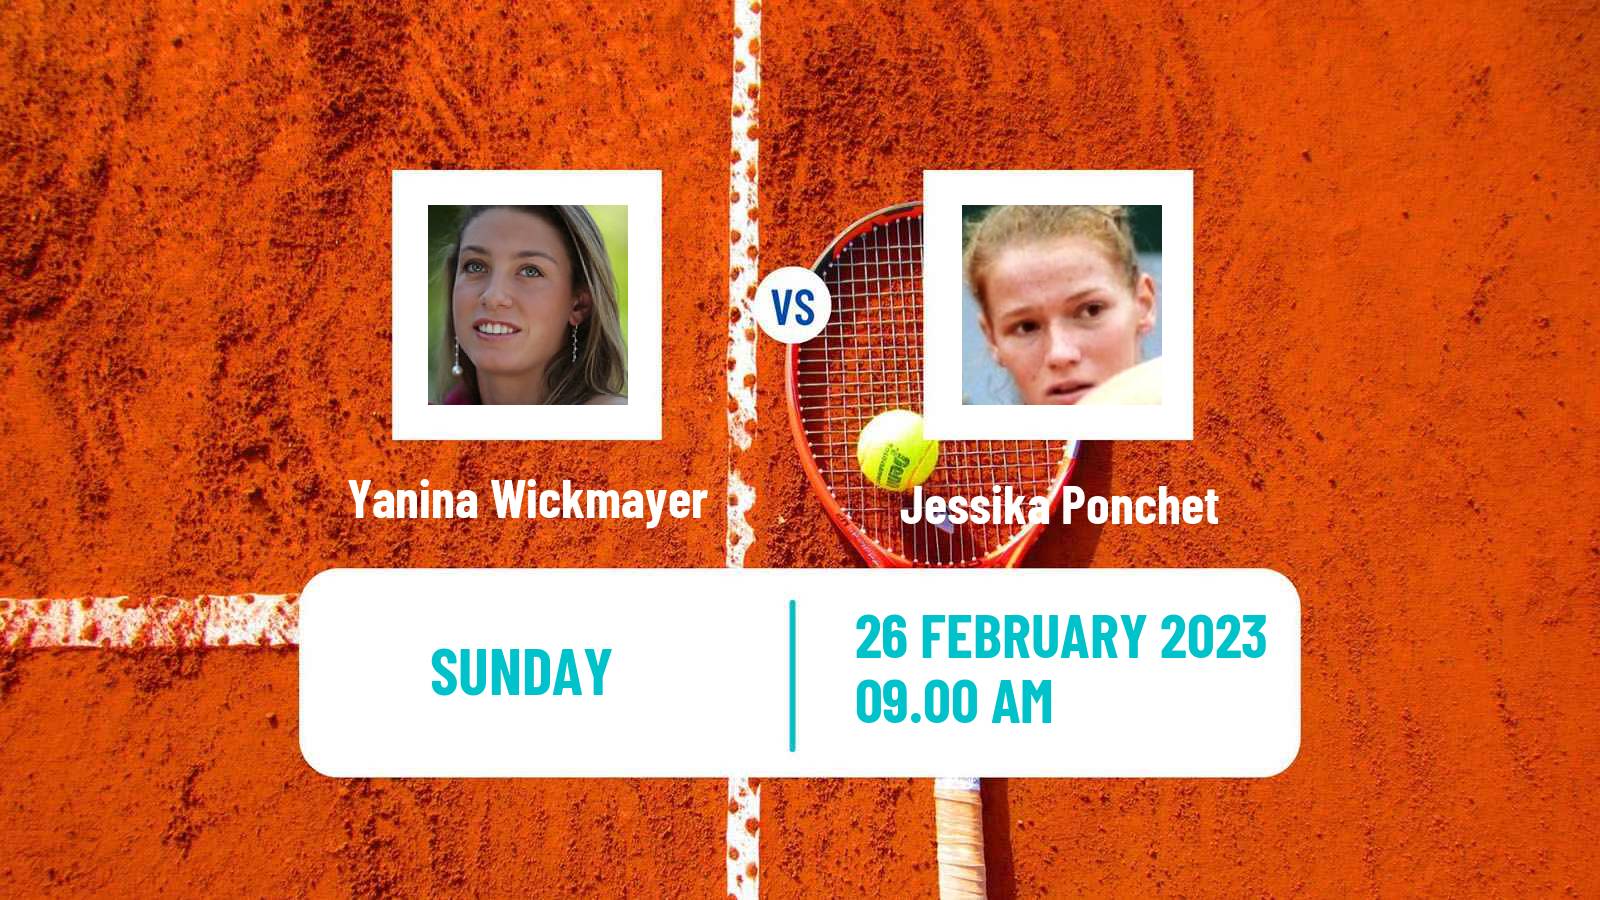 Tennis ITF Tournaments Yanina Wickmayer - Jessika Ponchet